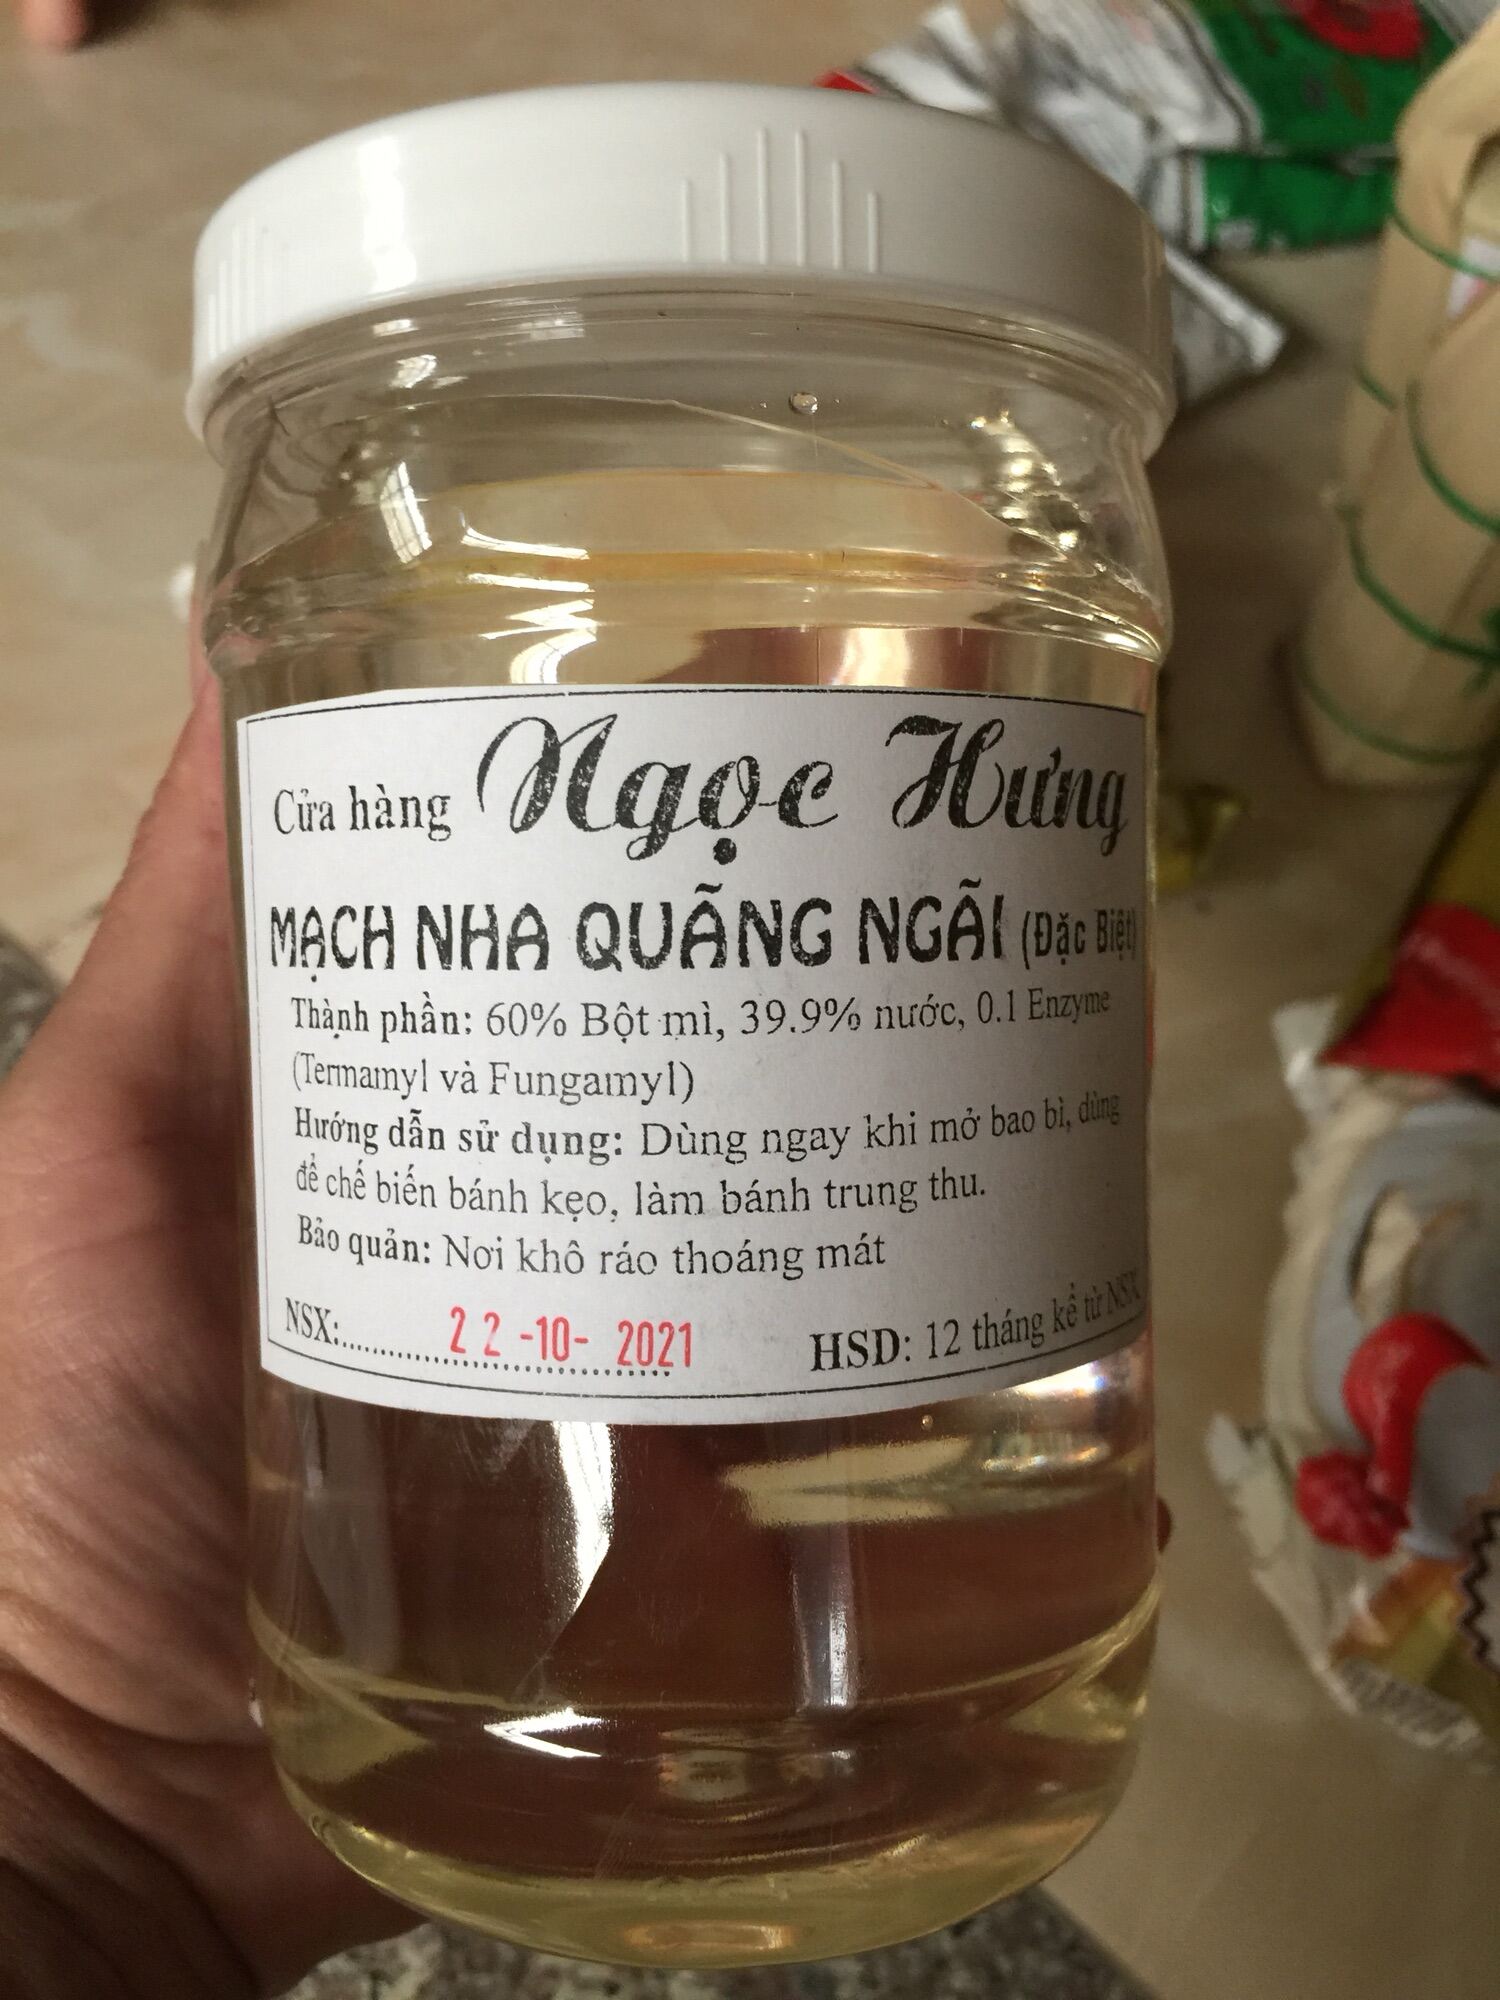 Mạch nha Quảng ngãi Kim nguyên 1 kg